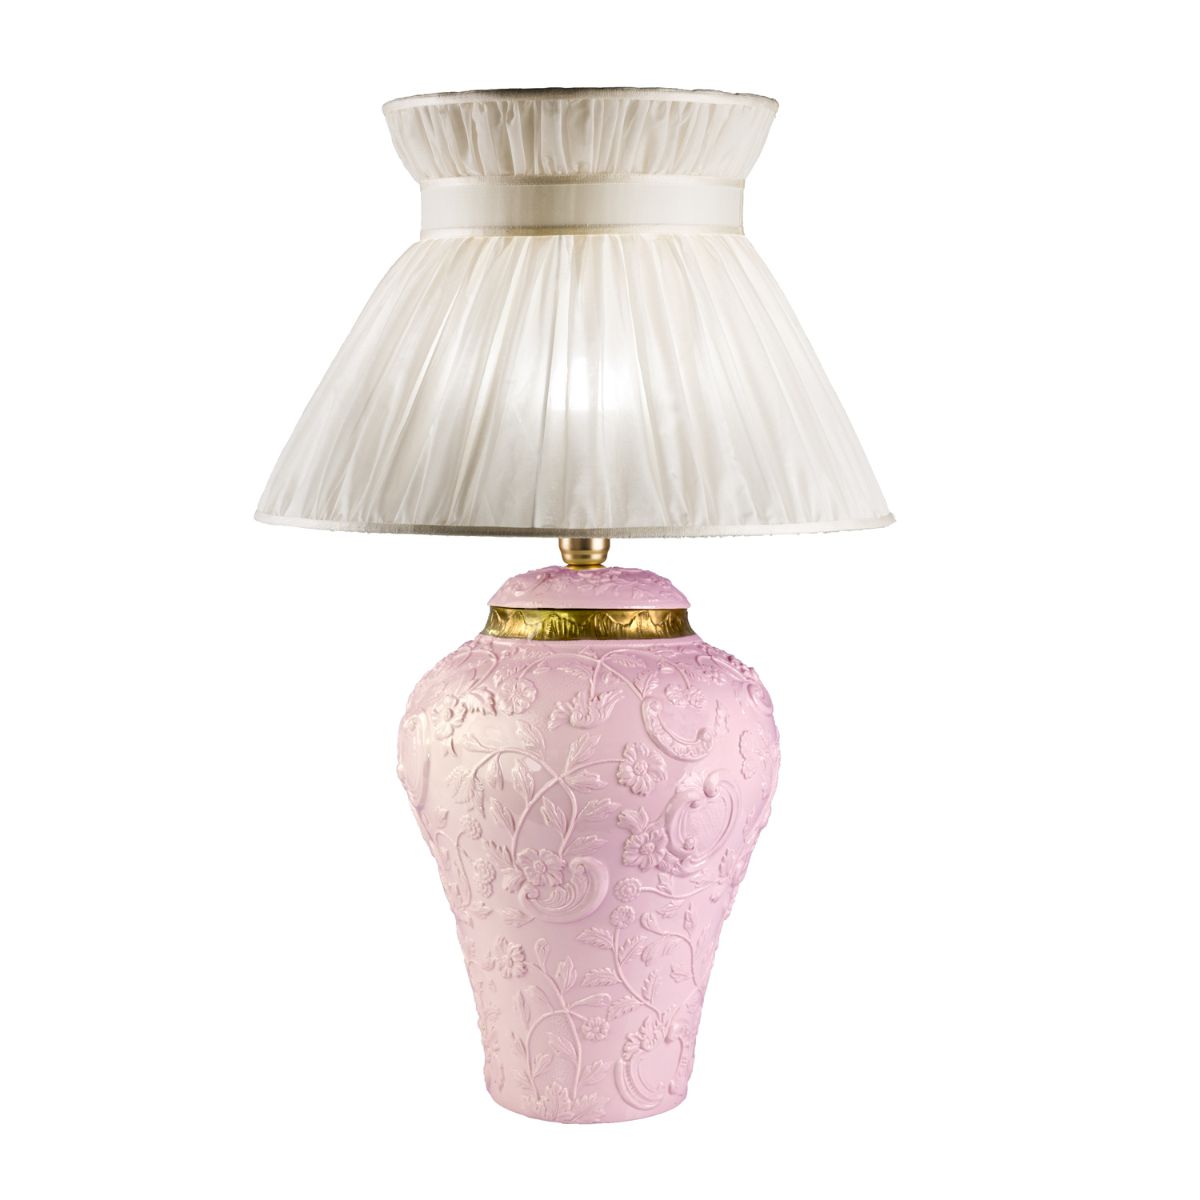 Taormina Large Table Lamp - Pink & Gold